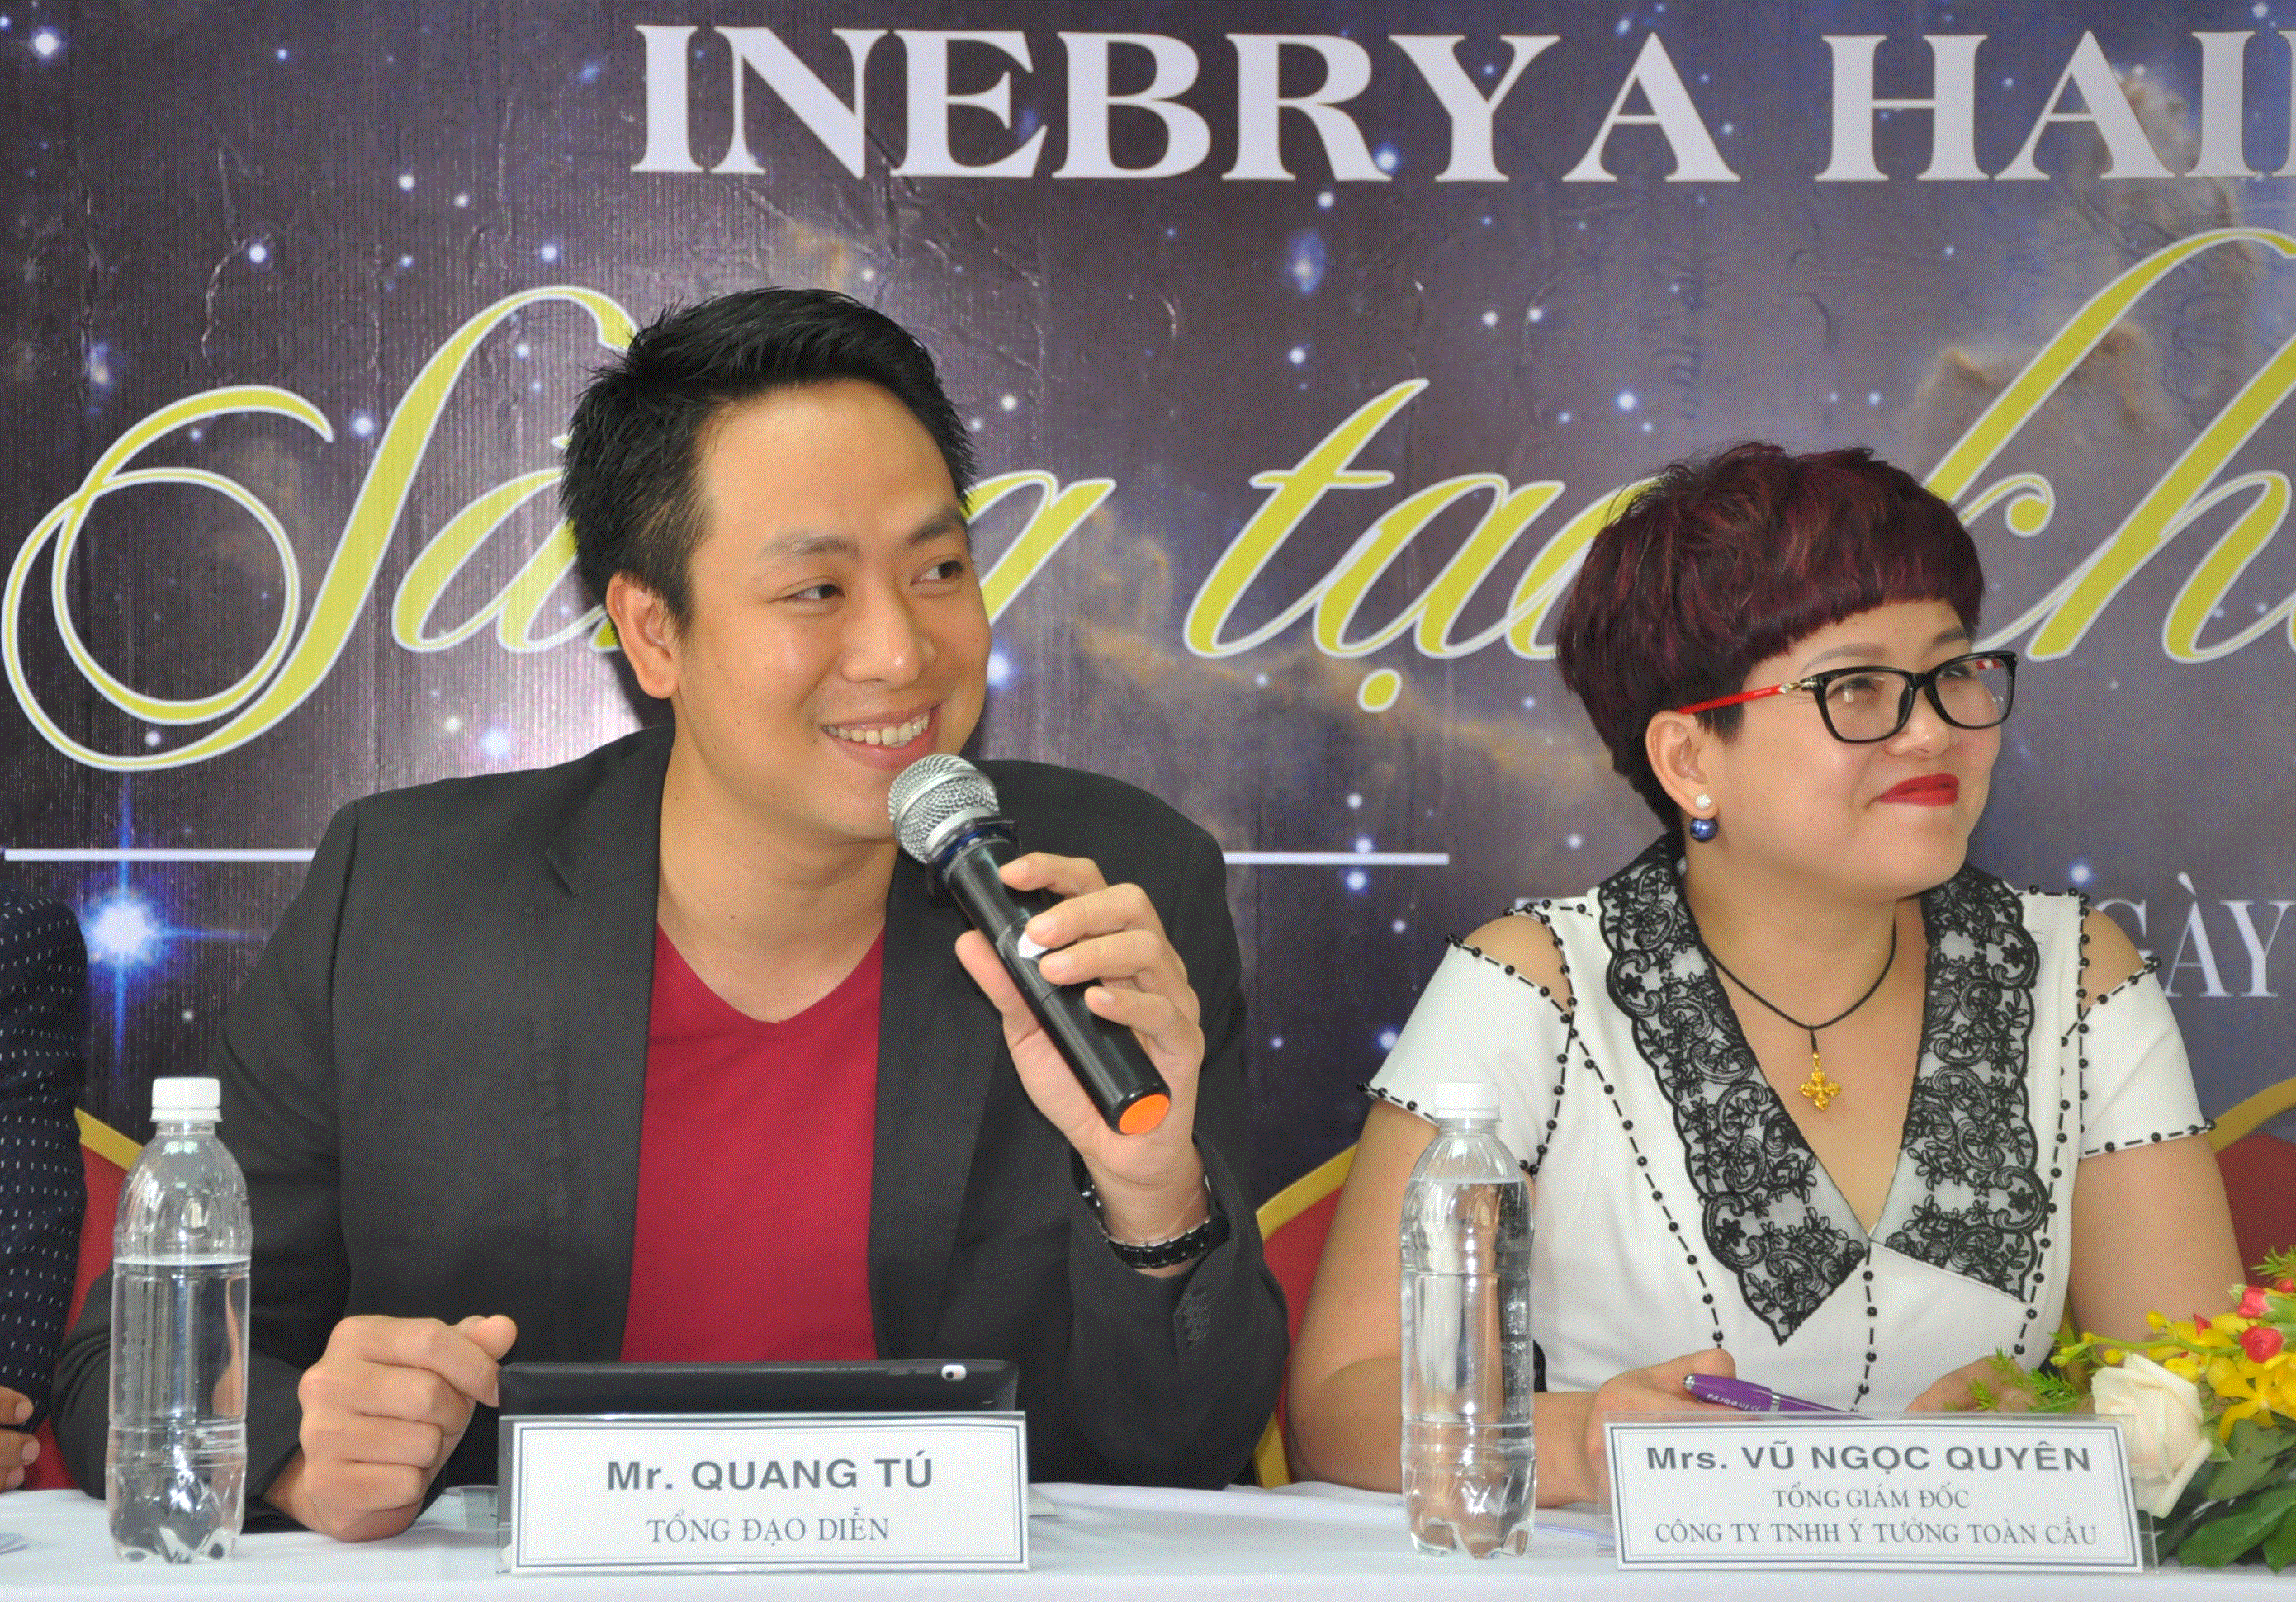 Còn đạo diễn sự kiện Minh Tú và Giám đốc Công ty TNHH Ý tưởng toàn cầu tại buổi họp báo.